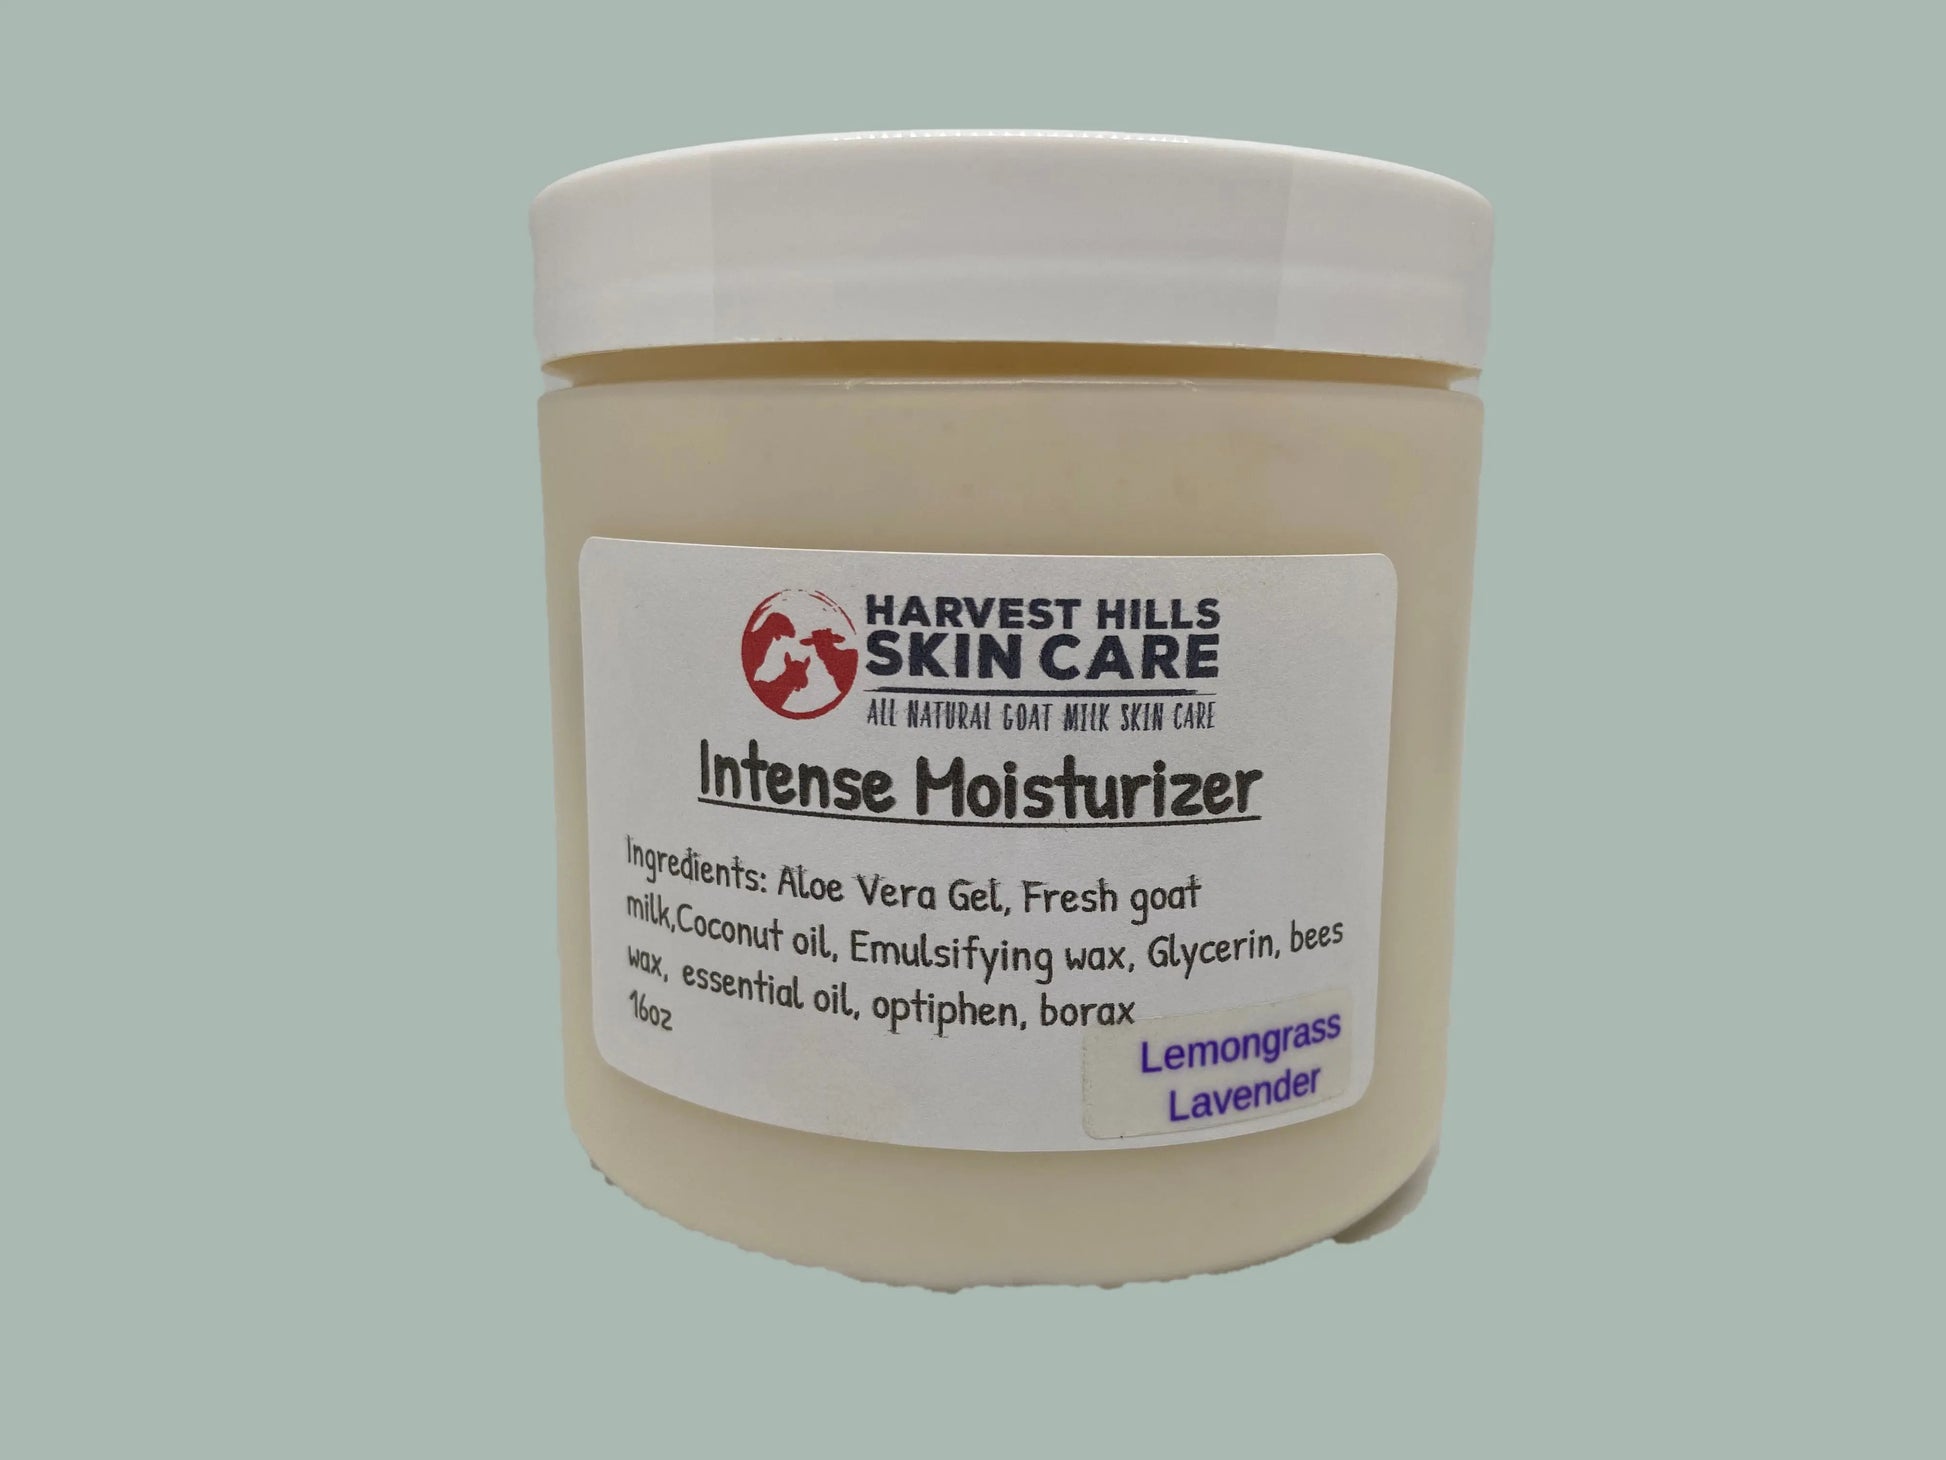 Lemongrass Lavender Intense Moisturizer - Refill available Harvest Hills Skin Care All Natural Goat Milk Skin Care